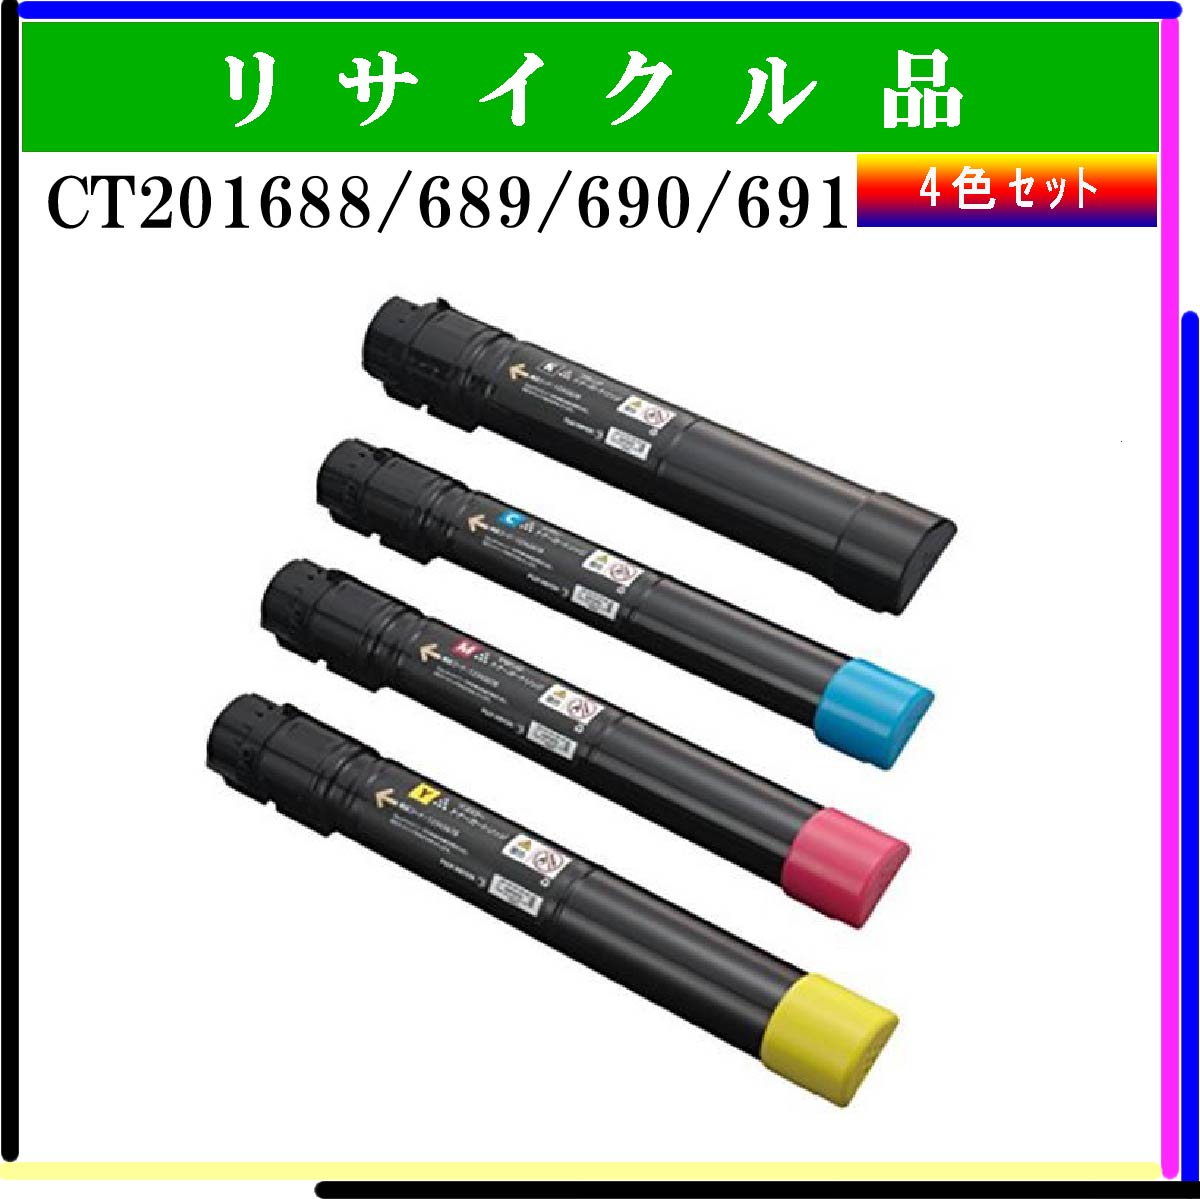 CT201688/689/690/691 (4色ｾｯﾄ)